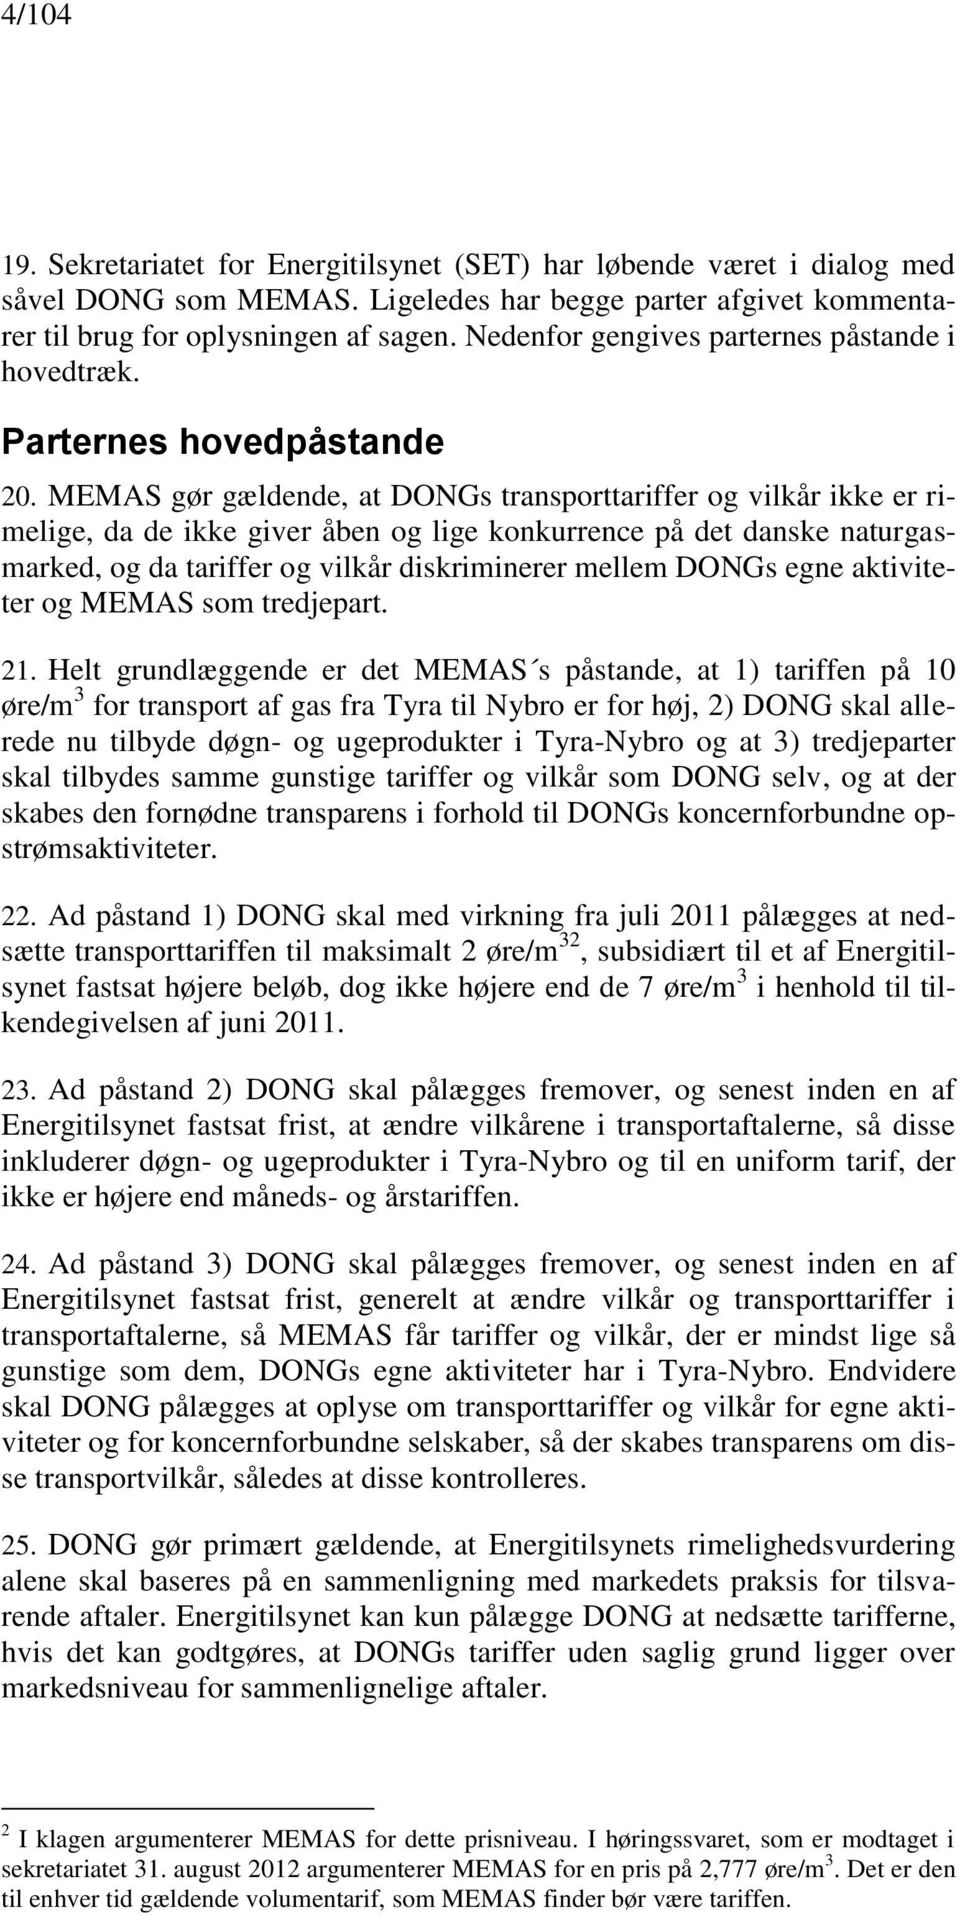 MEMAS gør gældende, at DONGs transporttariffer og vilkår ikke er rimelige, da de ikke giver åben og lige konkurrence på det danske naturgasmarked, og da tariffer og vilkår diskriminerer mellem DONGs